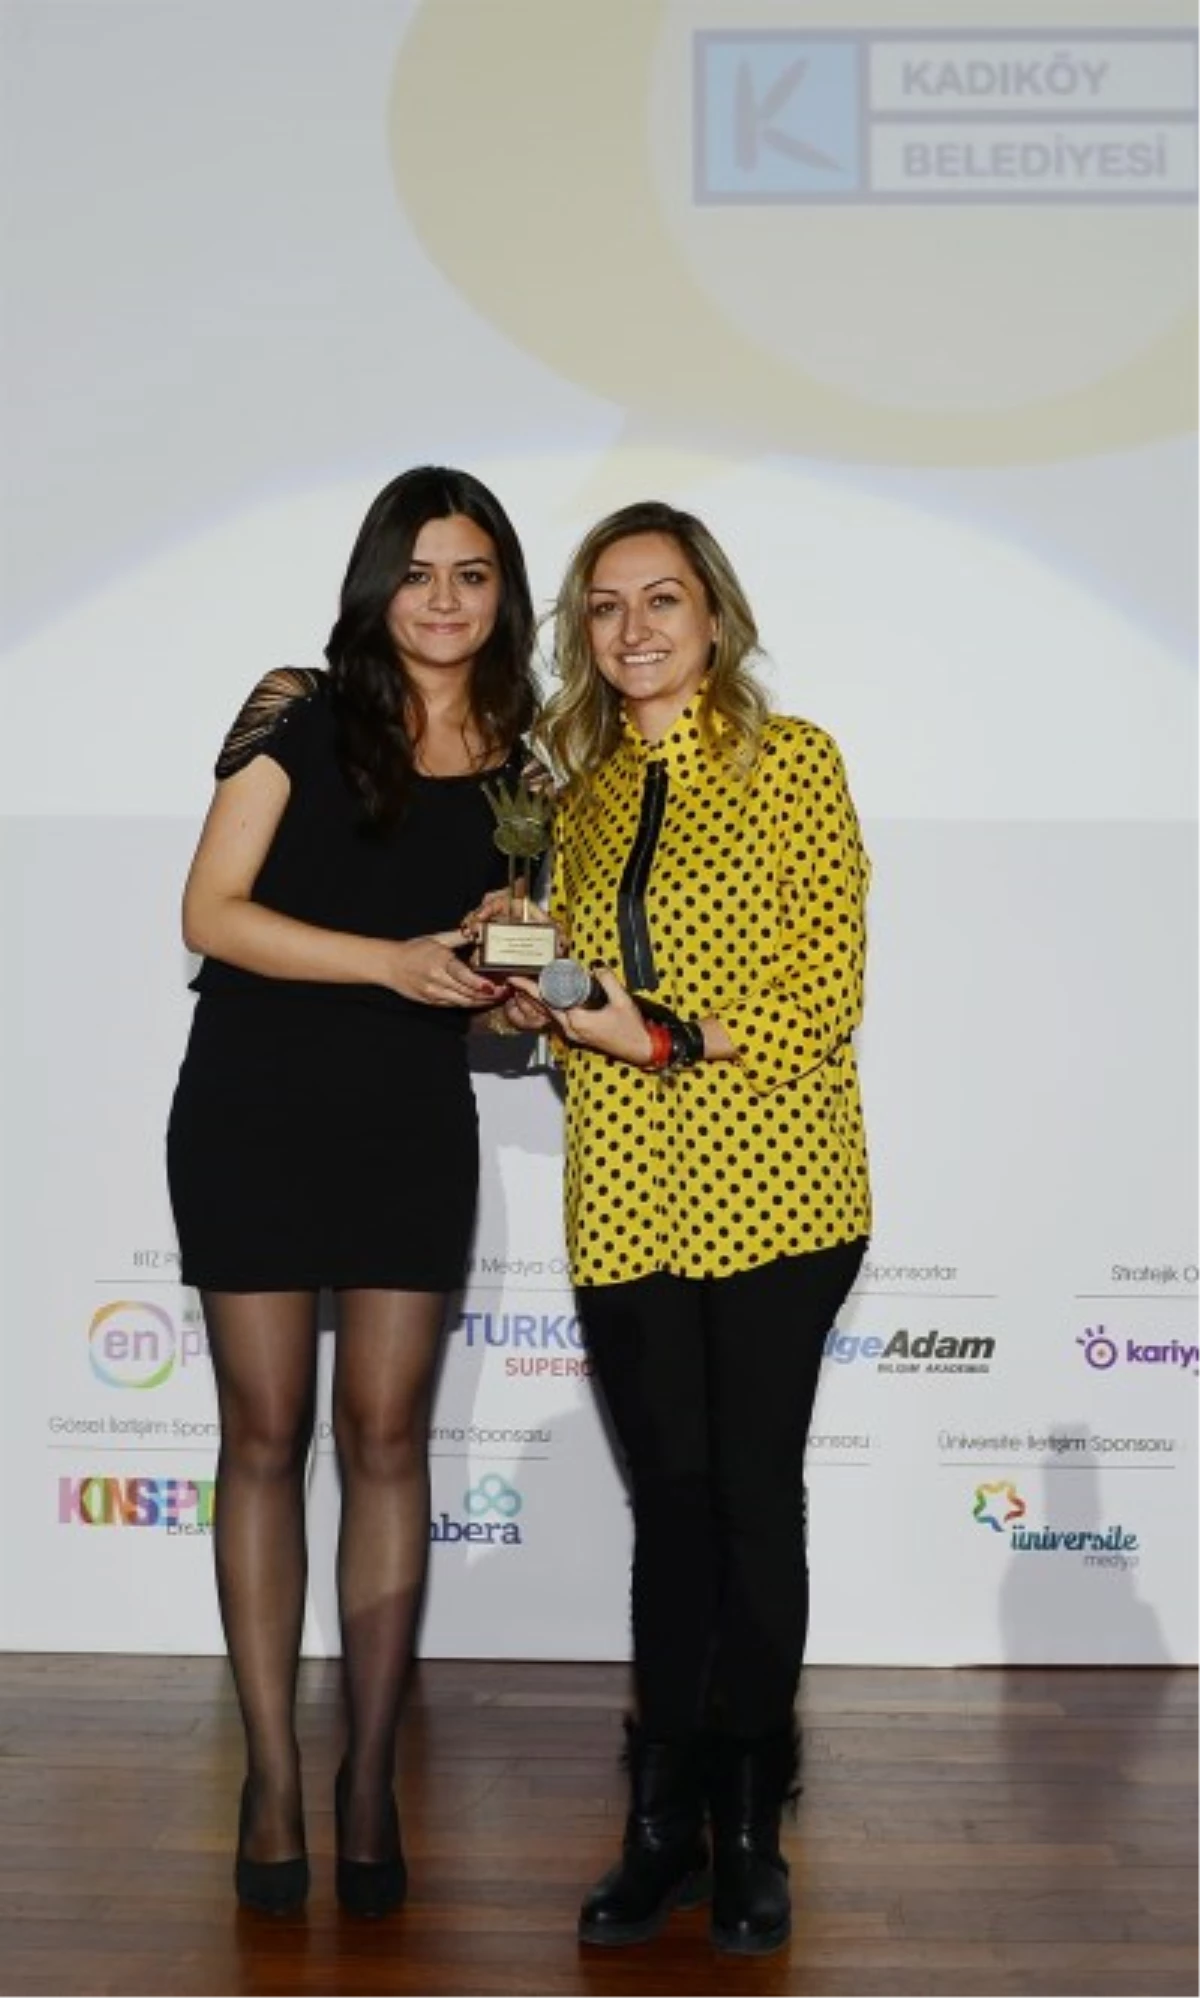 Kadıköy Belediyesi\'ne Sosyal Medya Ödülü Verildi